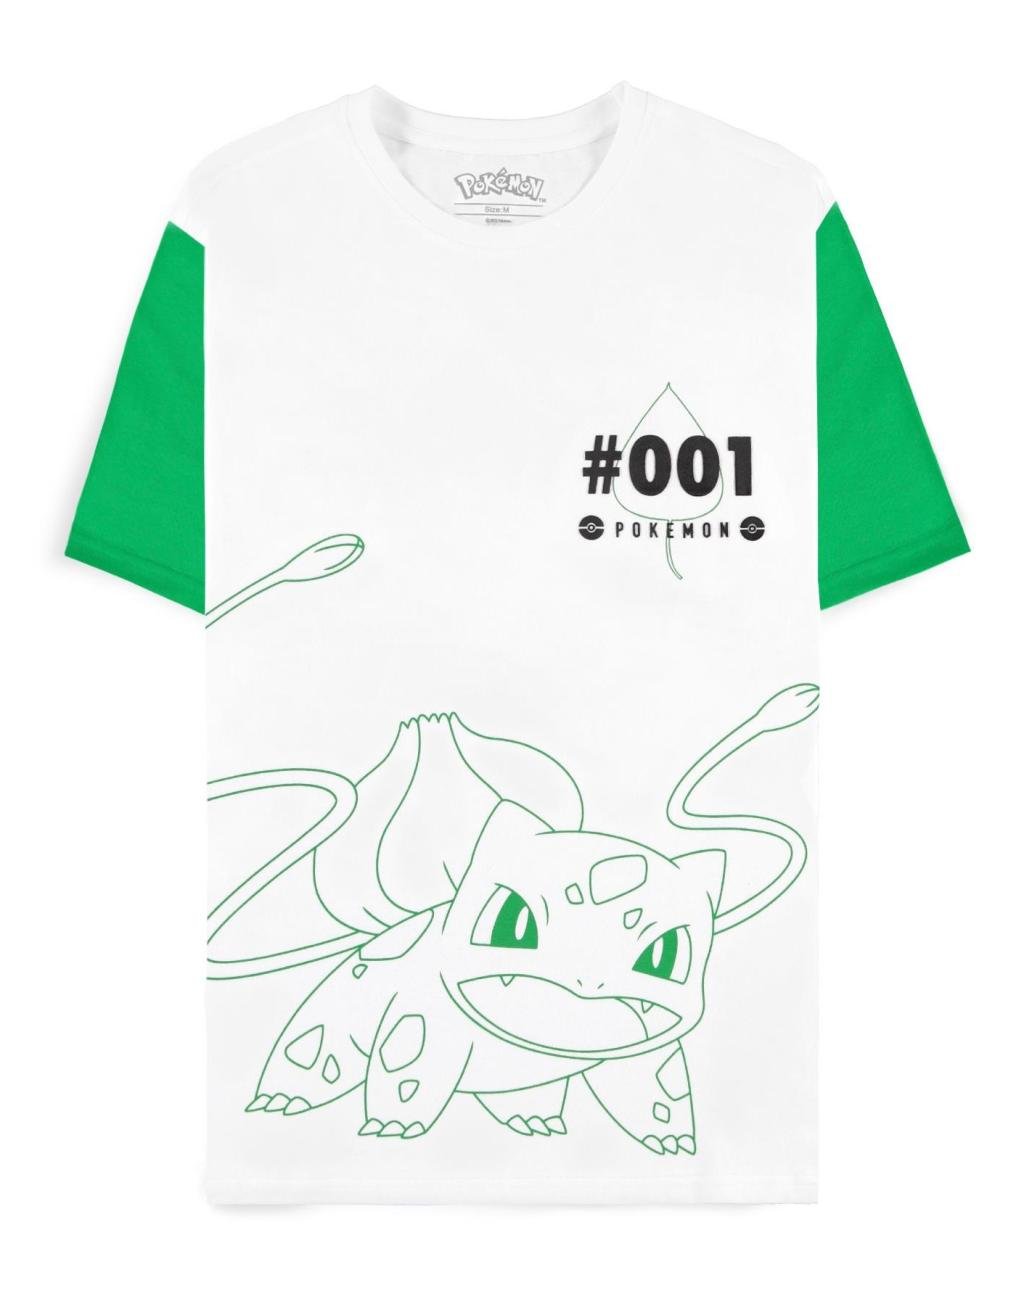 POKEMON - Bulbasaur - Men's T-shirt (S)